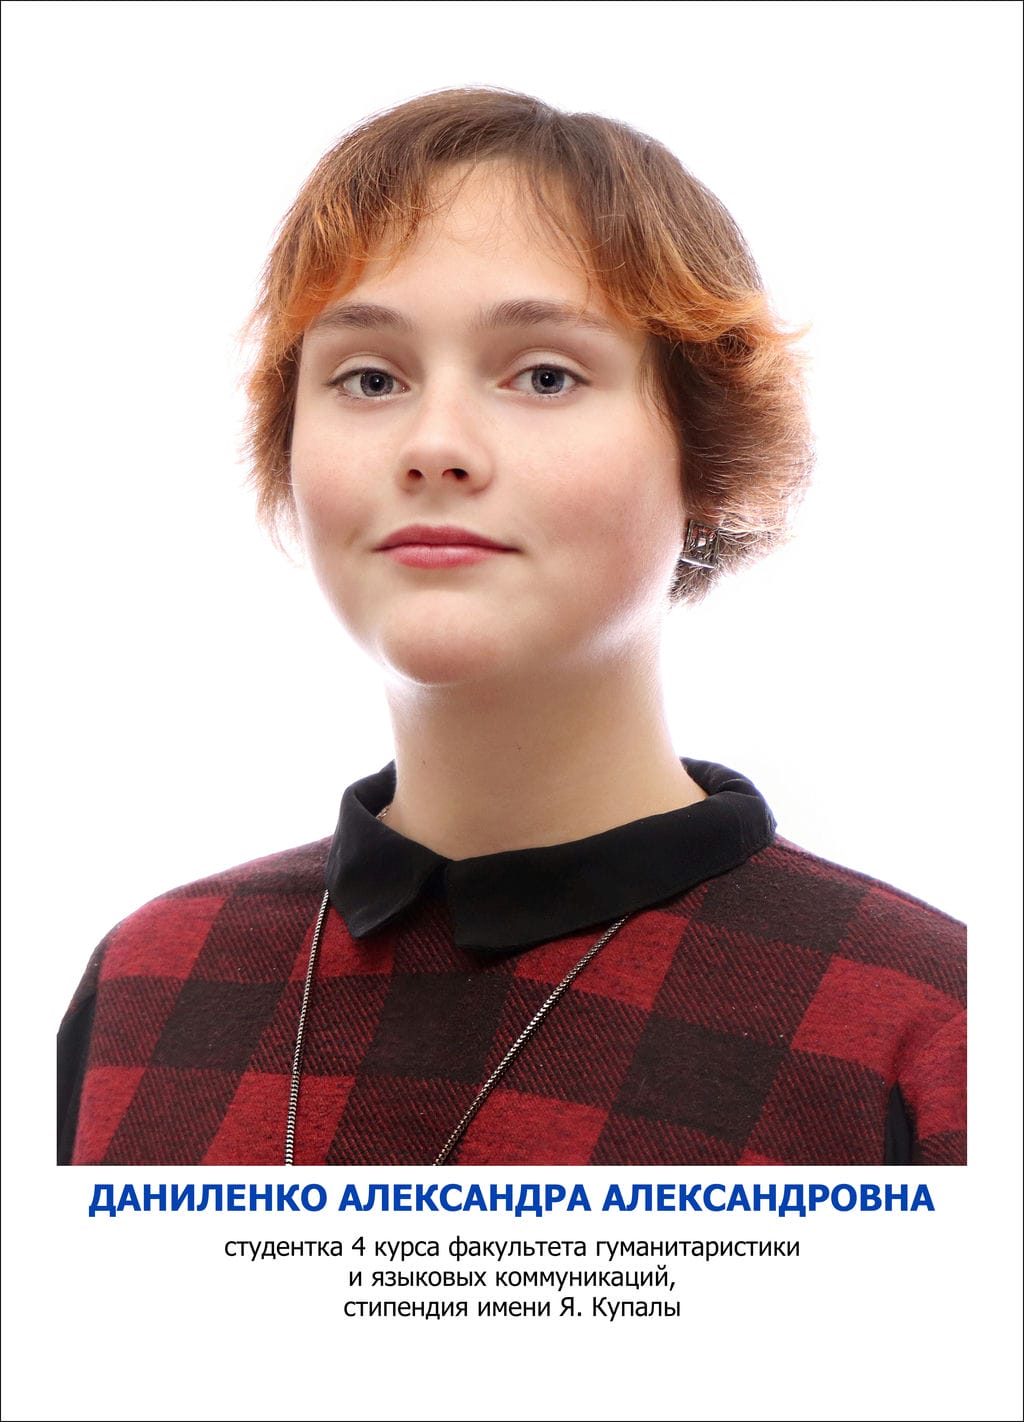 Даниленко Александра Александровна